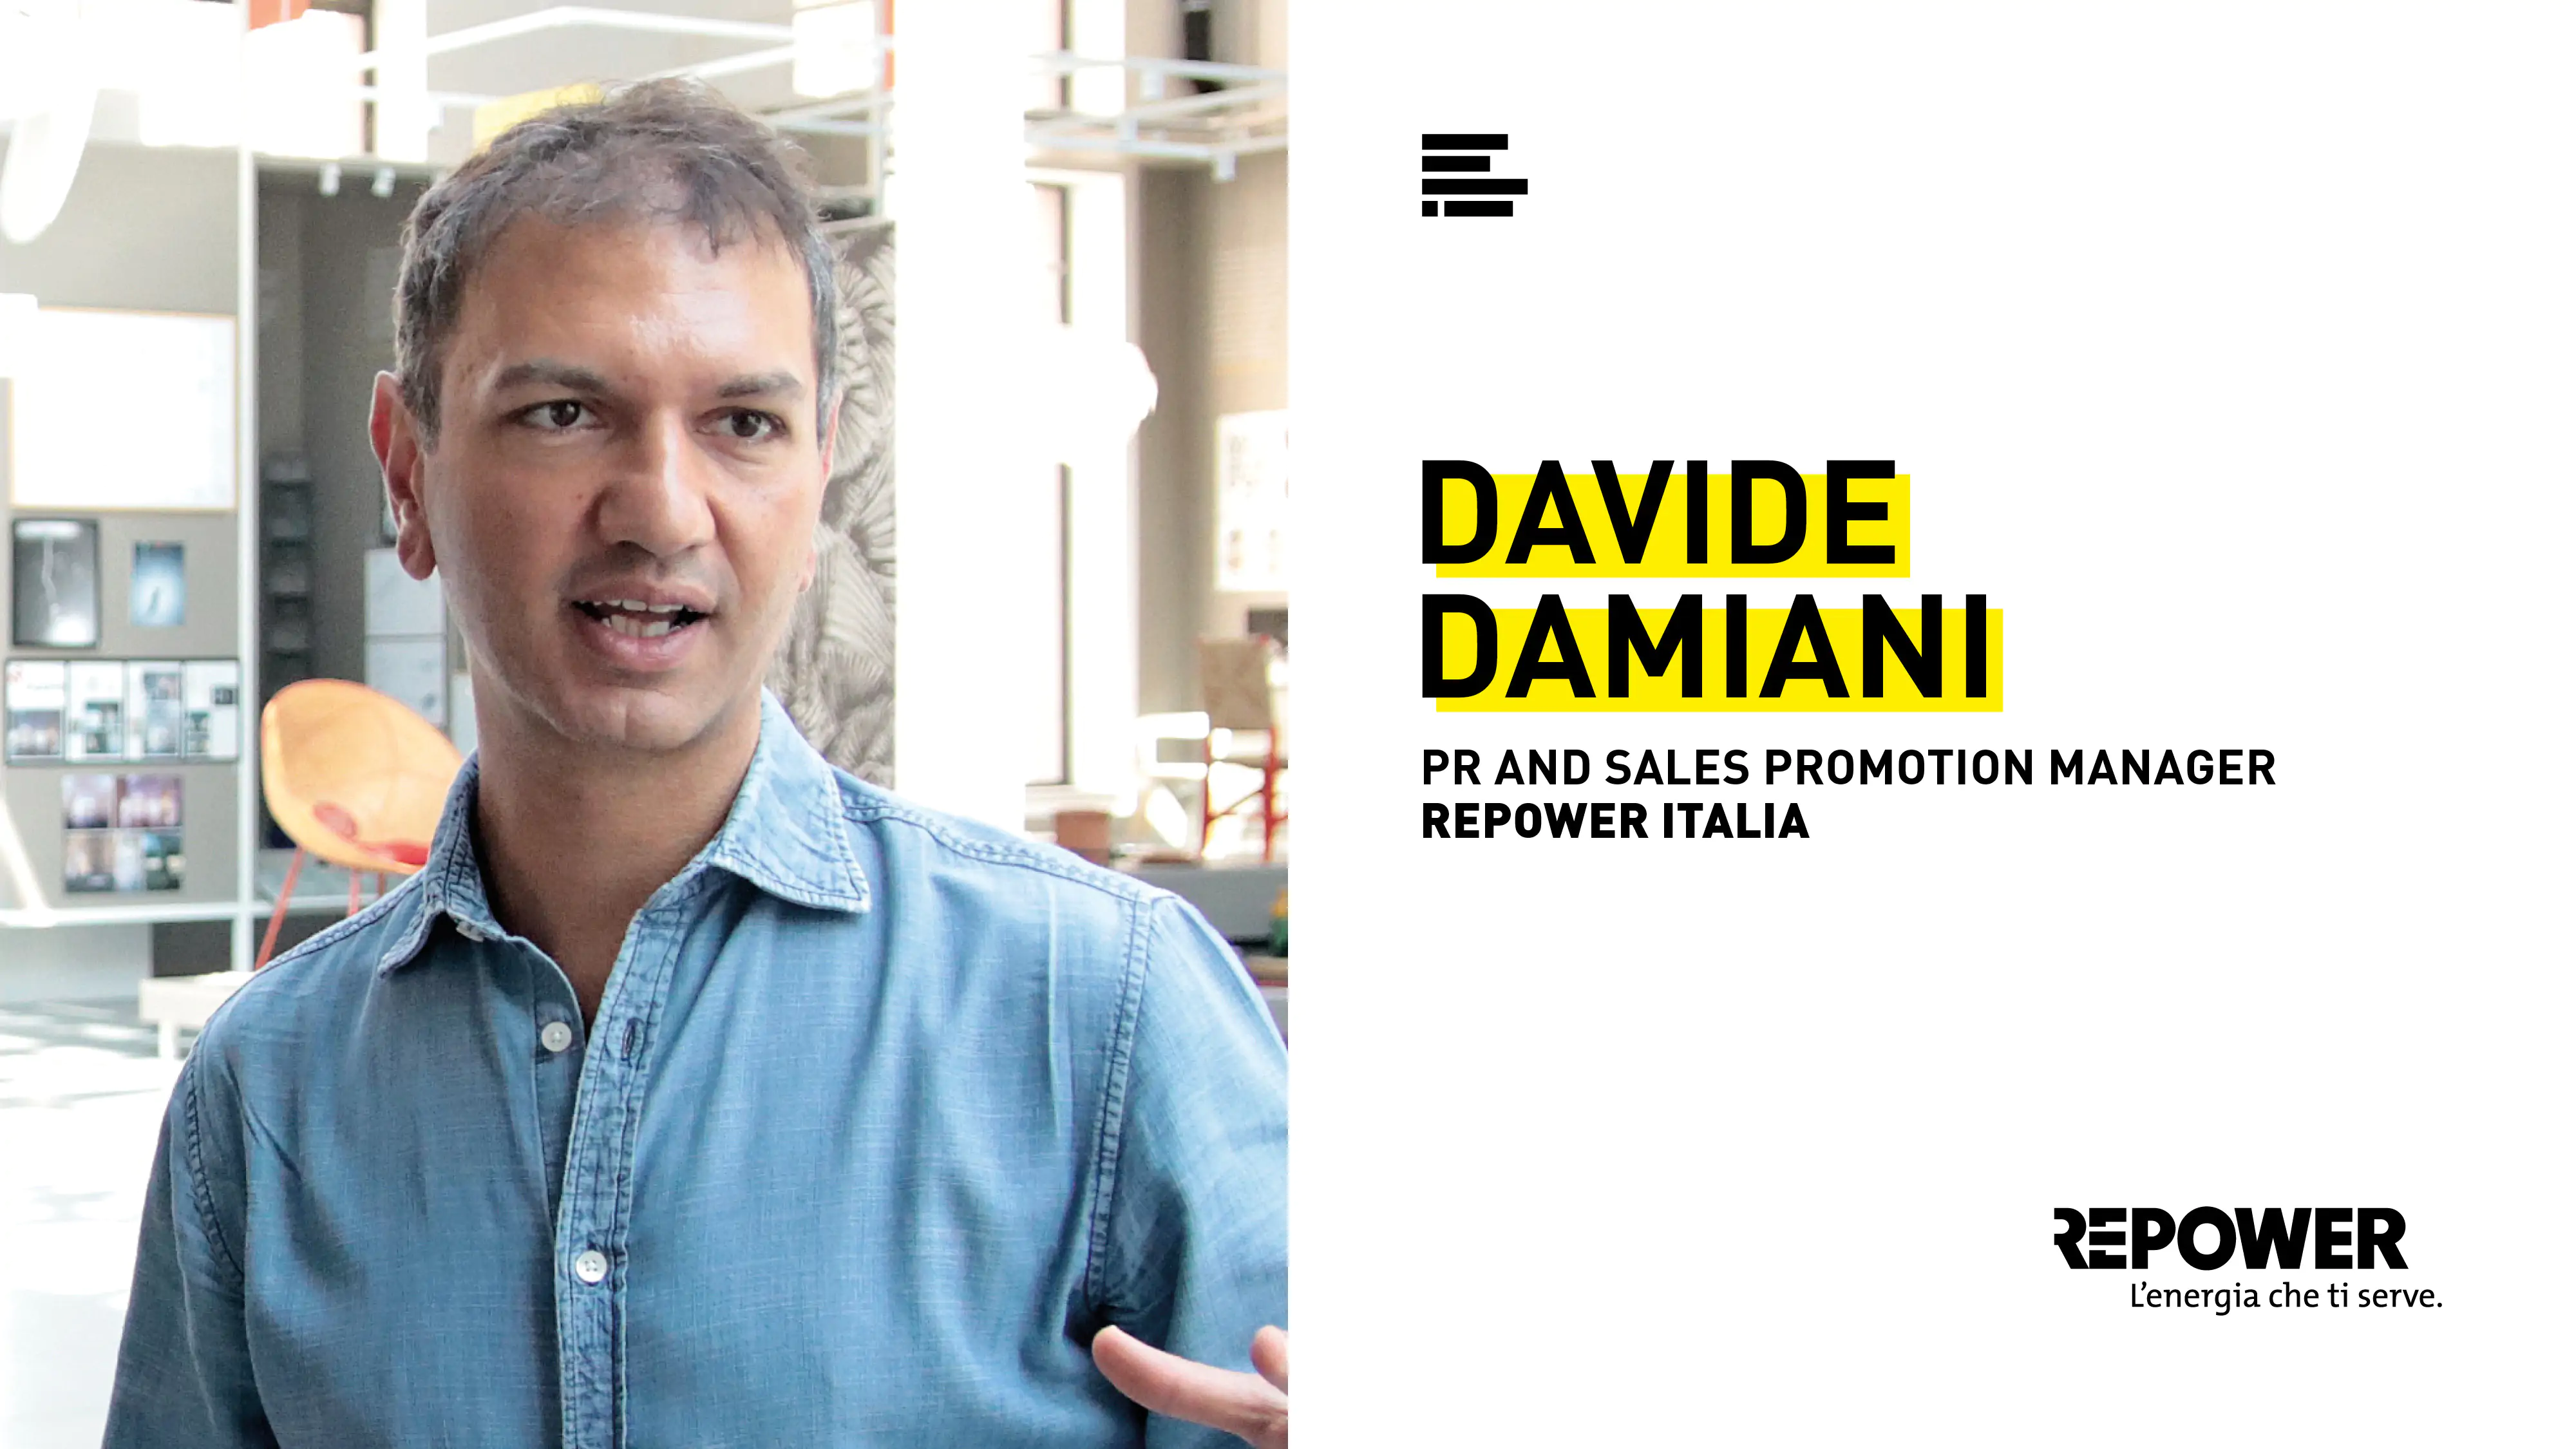 Davide Damiani, PR & Sales Promotion Manager di Repower Italia, racconta la sua esperienza di collaborazione con gli studenti del corso IAAD. in Product design